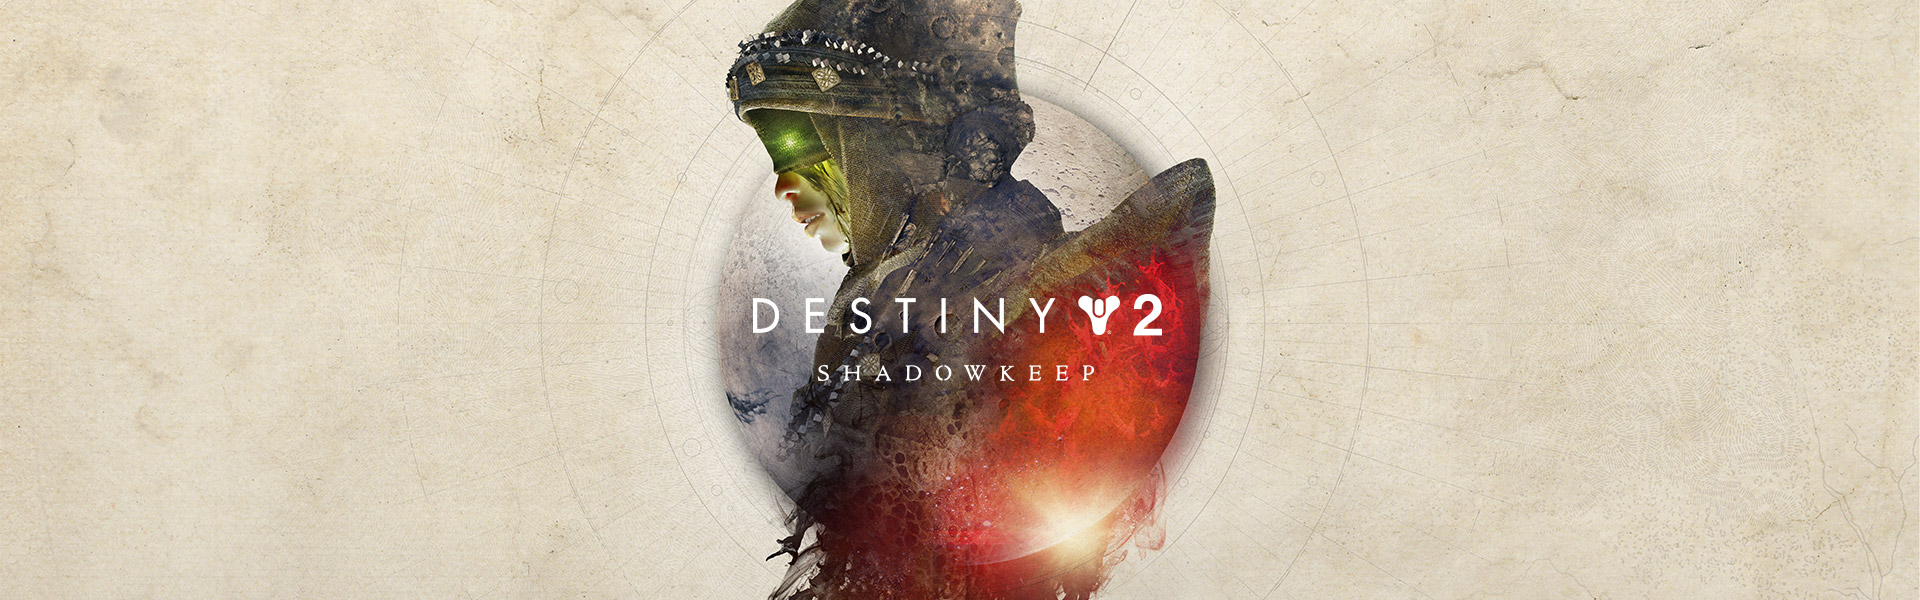 Destiny 2 Poster - HD Wallpaper 